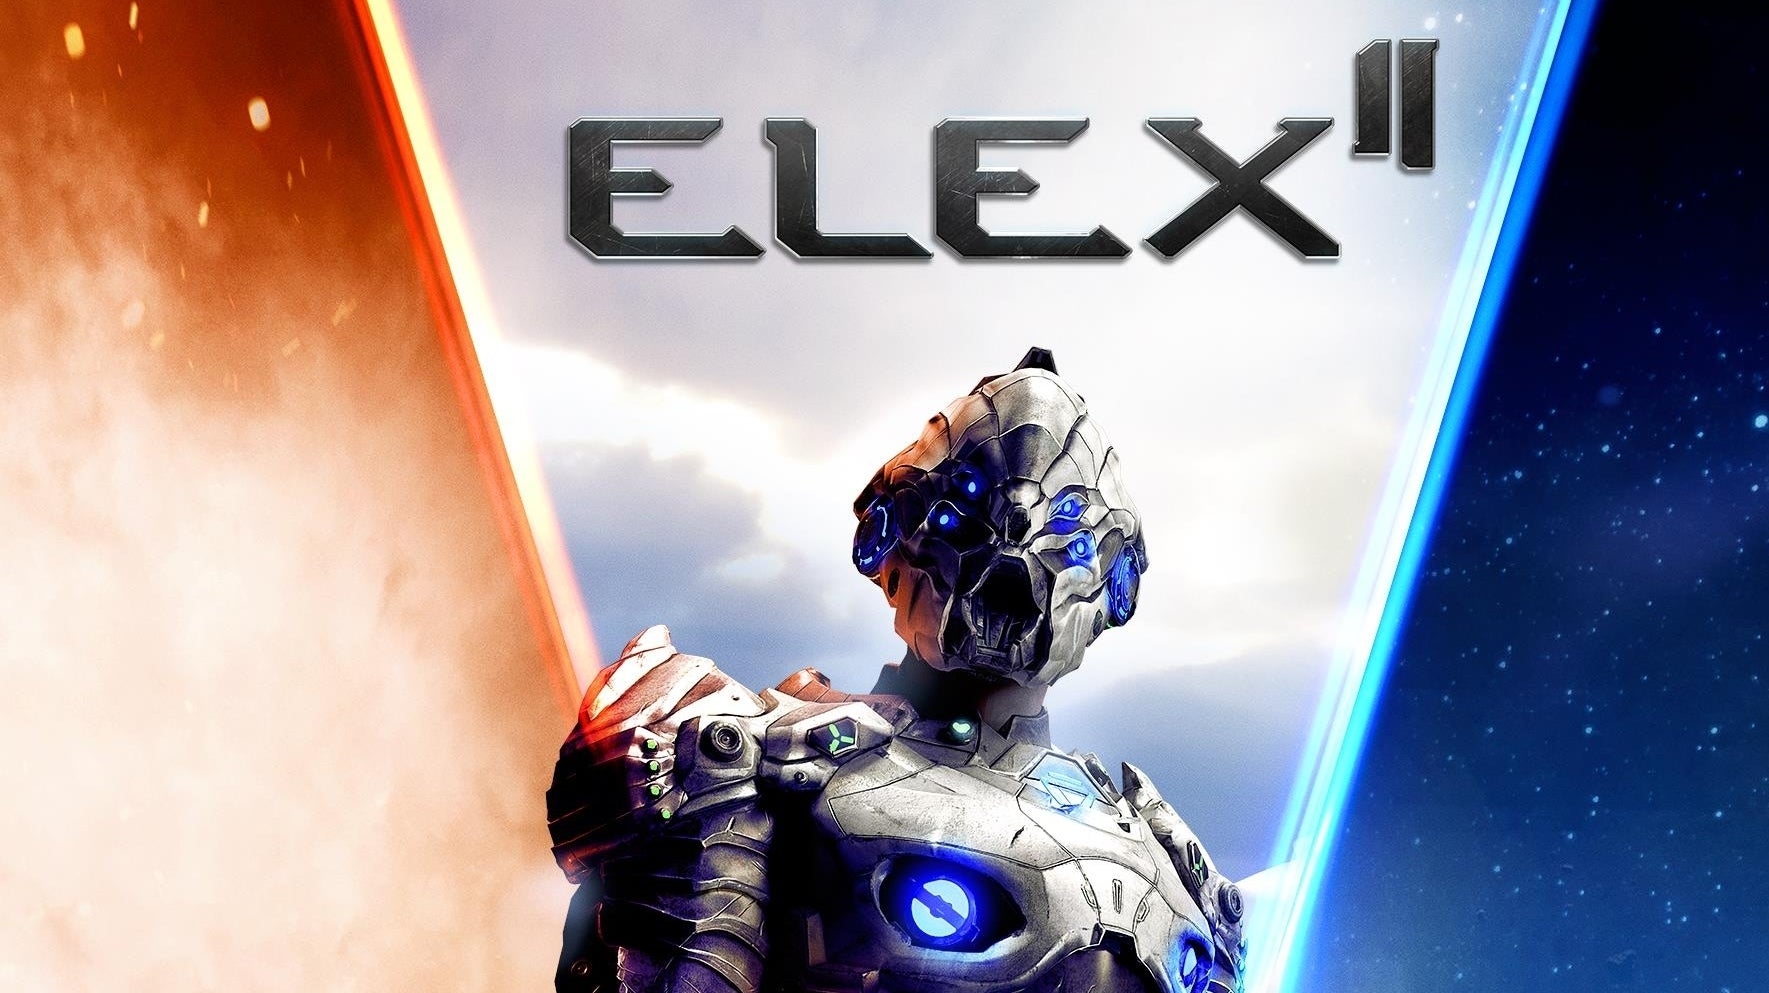 Immagine di ELEX II annunciata la data di uscita e svelata la collector's edition